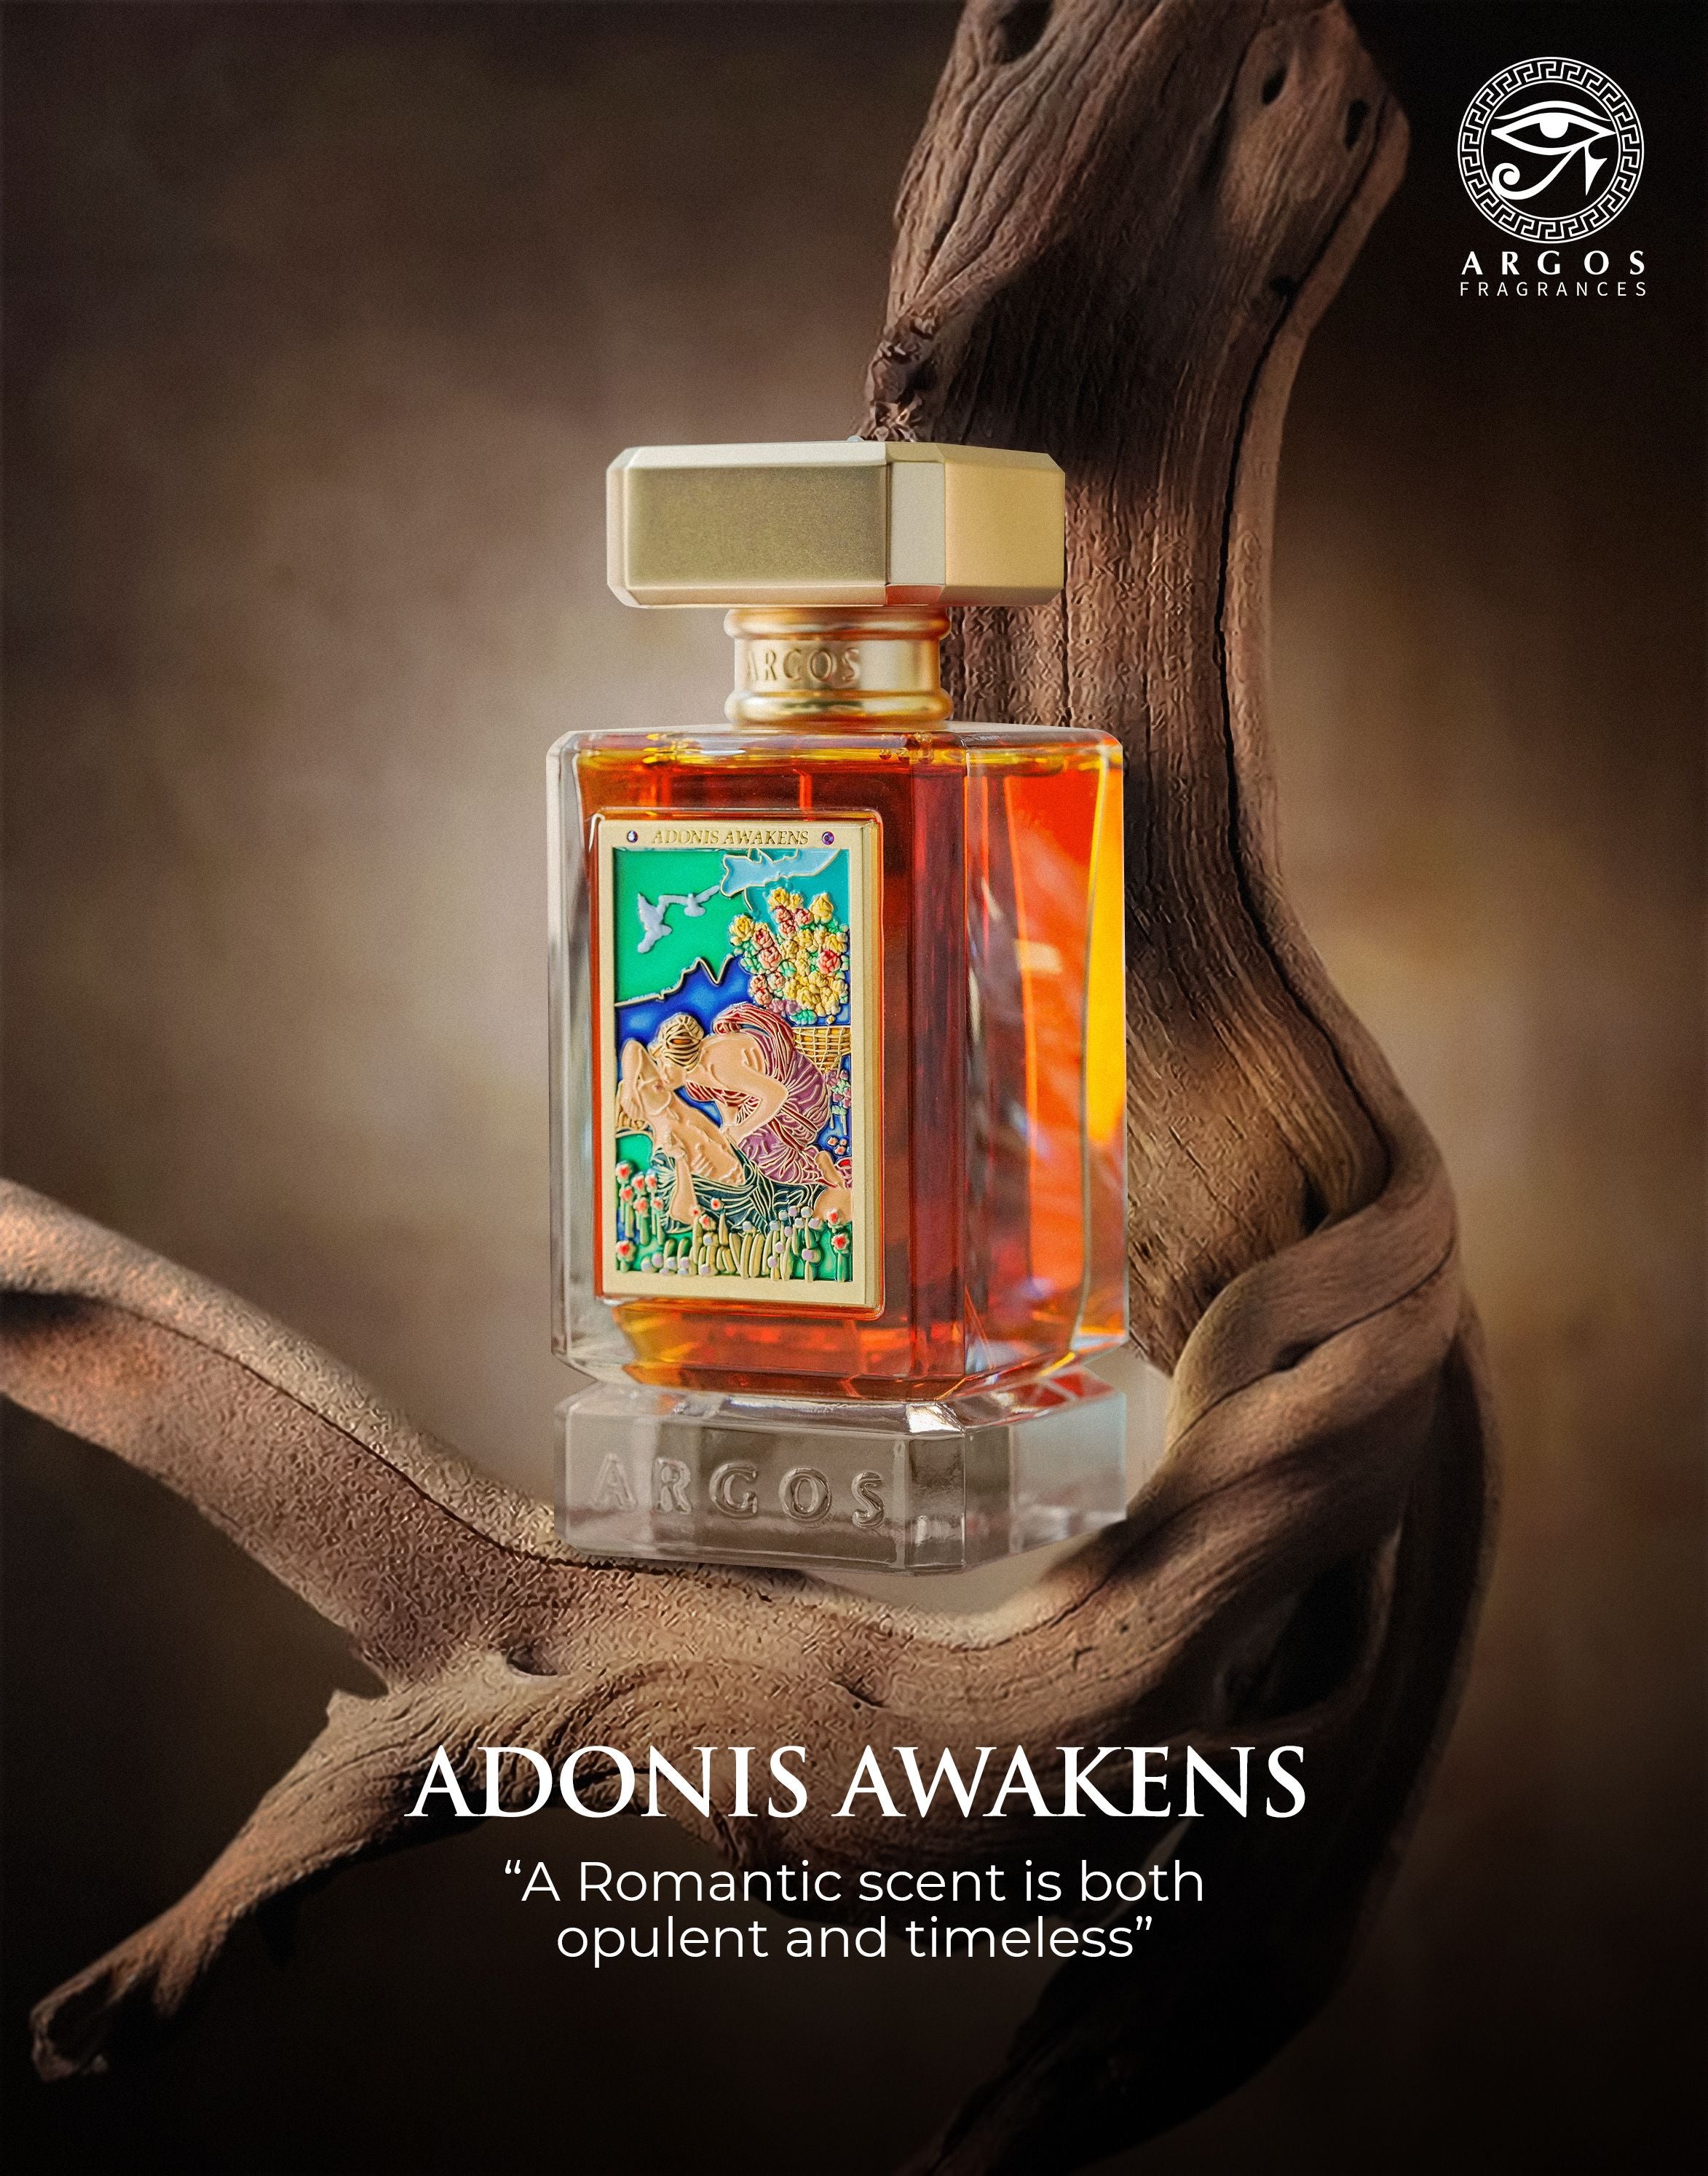 Argos ADONIS AWAKENS Perfume